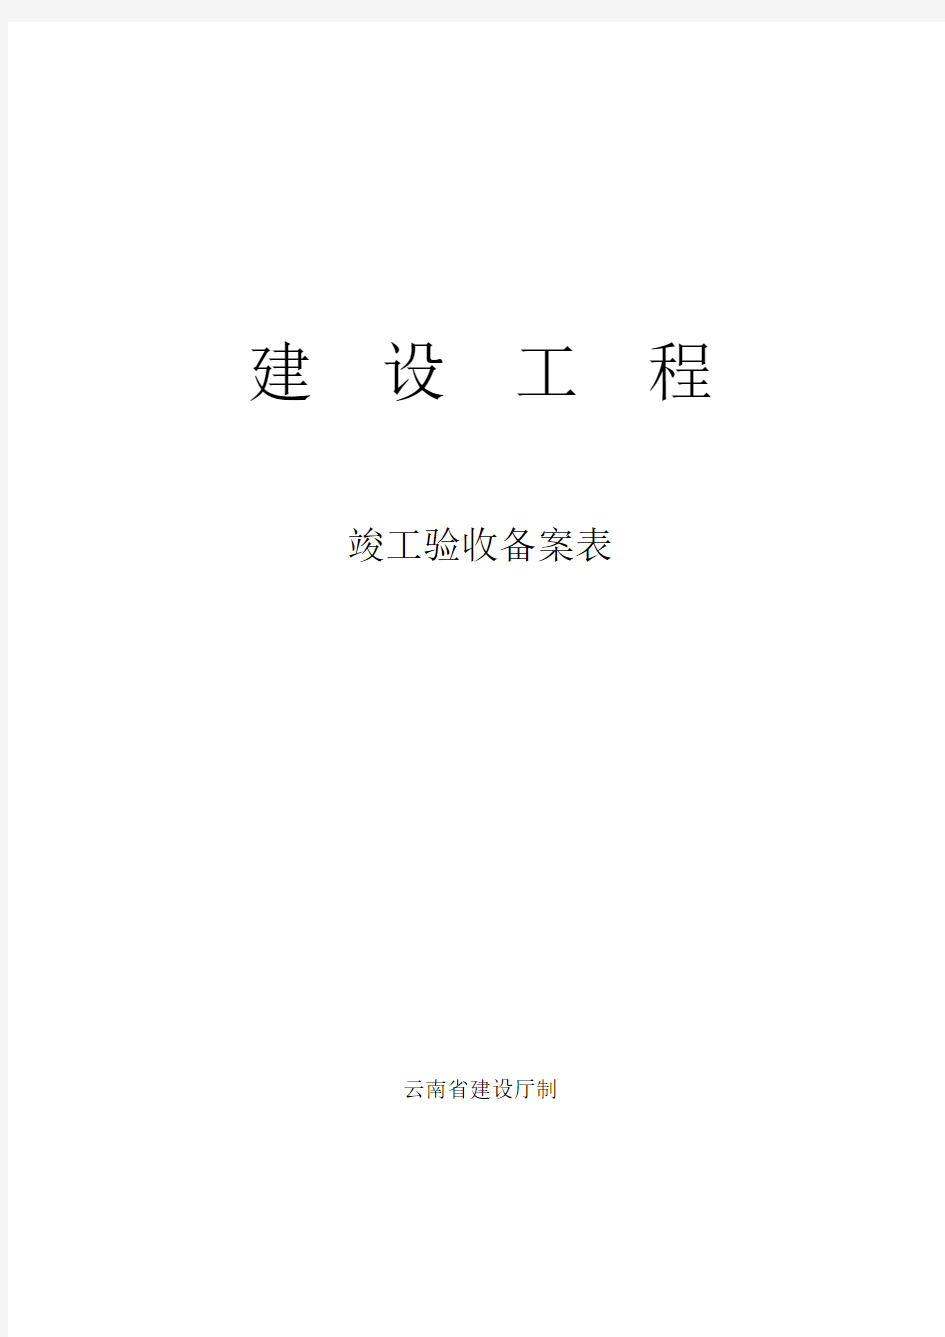 (完整版)云南省建设工程竣工验收备案表